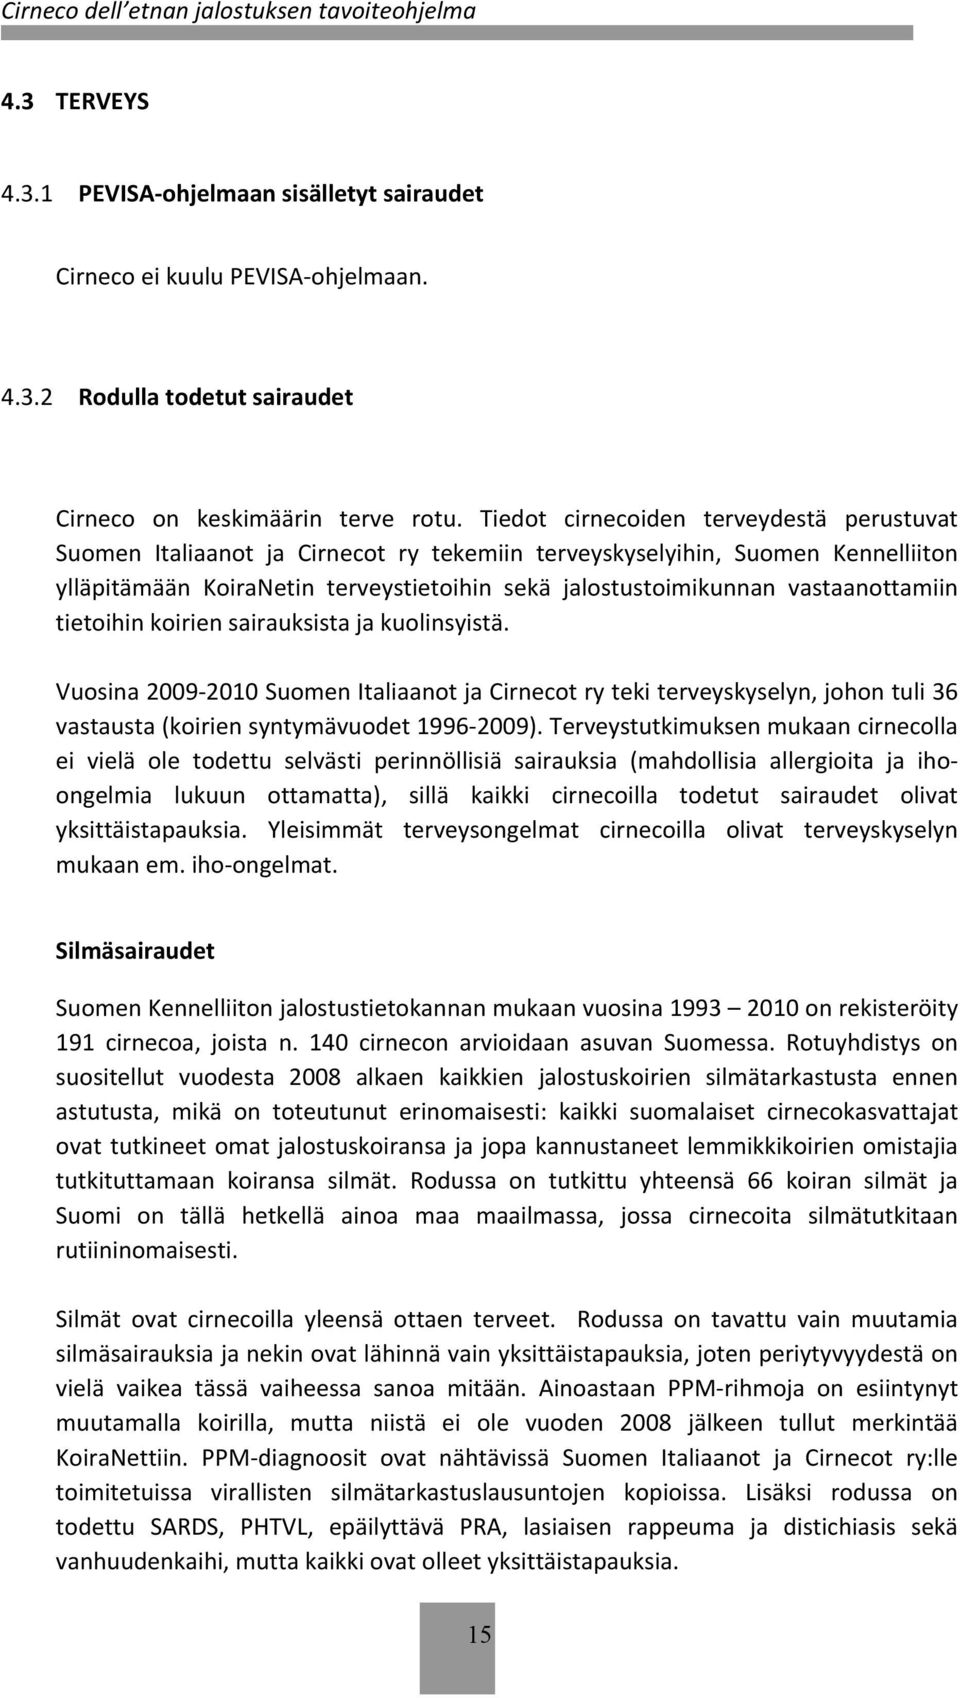 vastaanottamiin tietoihin koirien sairauksista ja kuolinsyistä. Vuosina 2009-2010 Suomen Italiaanot ja Cirnecot ry teki terveyskyselyn, johon tuli 36 vastausta (koirien syntymävuodet 1996-2009).